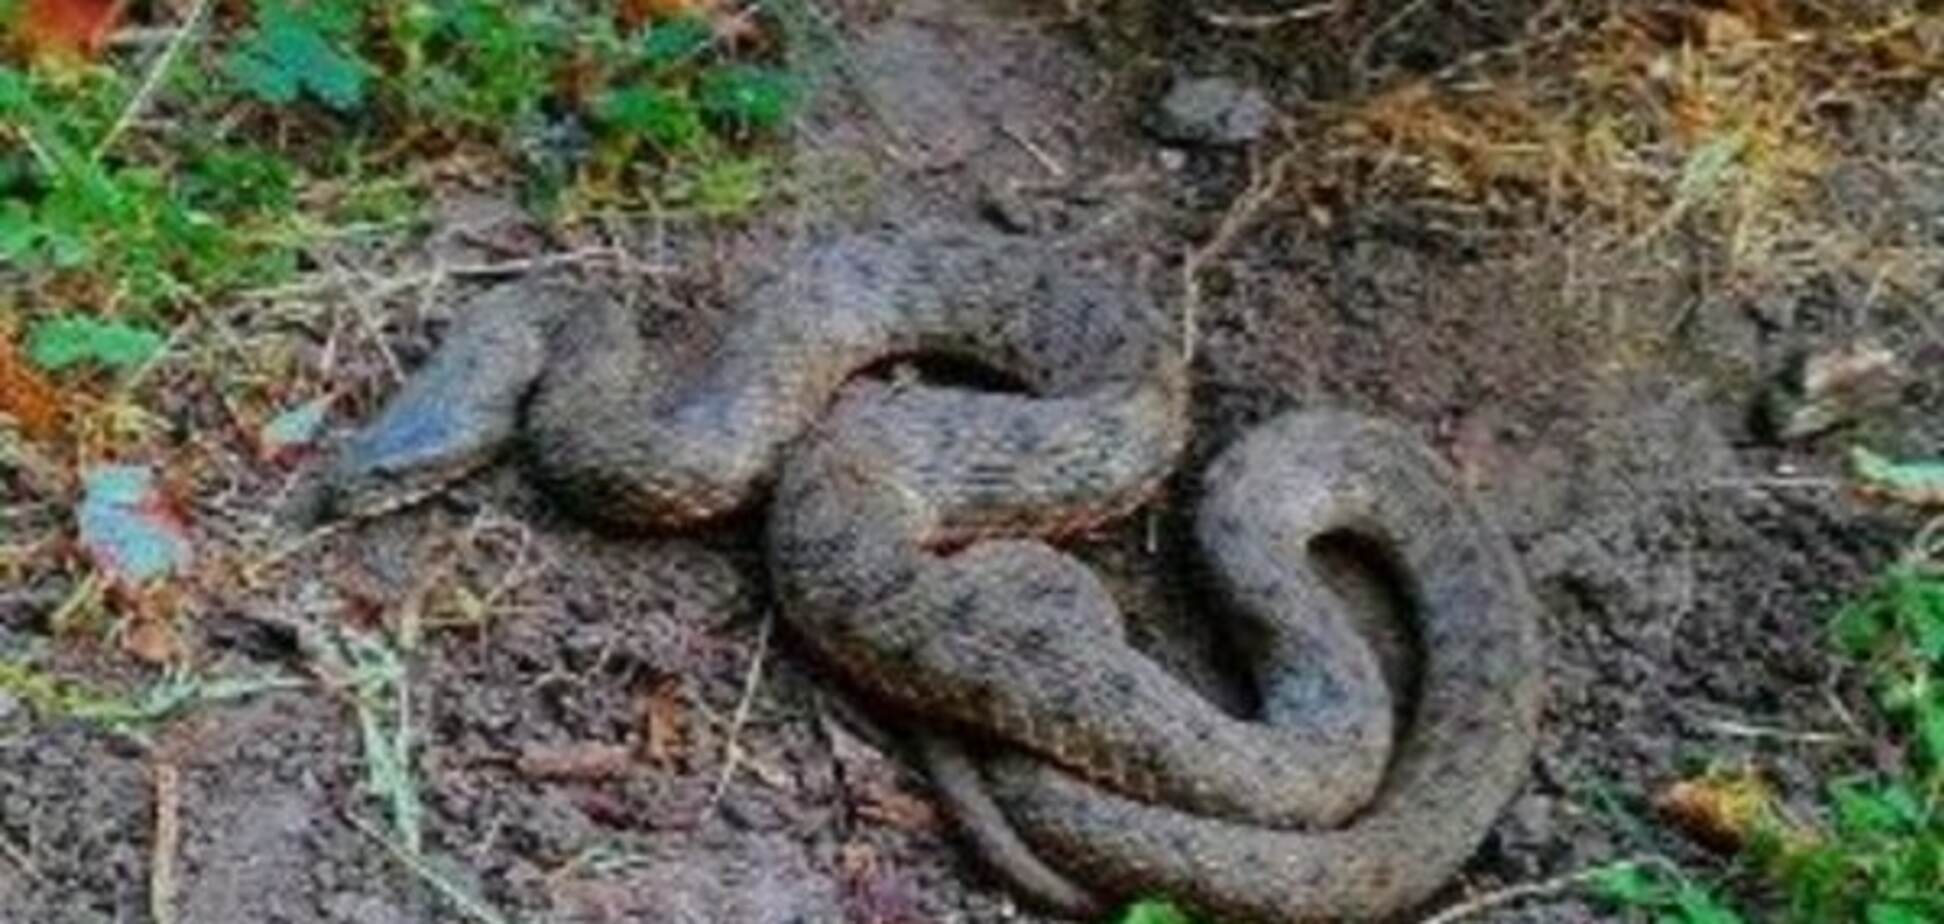 В Киеве возле школы нашли огромную змею: опубликовано фото